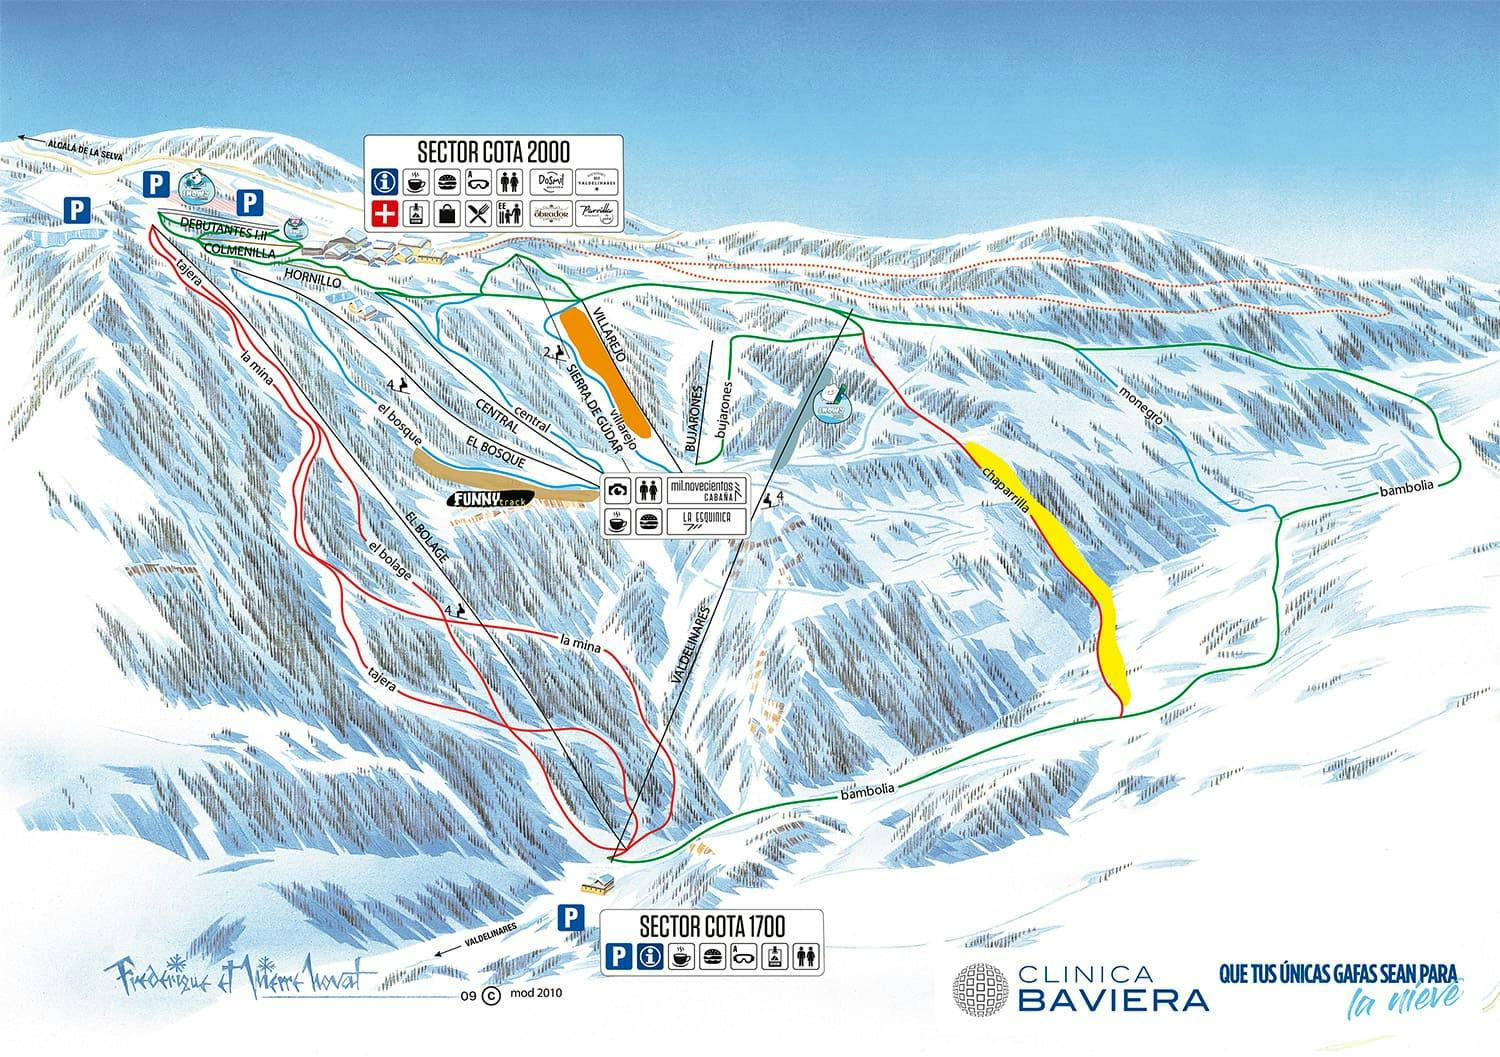 Copitos de Nieve - Estaciones de esquí, ski, snowboard - Mapa de la estación Valdelinares